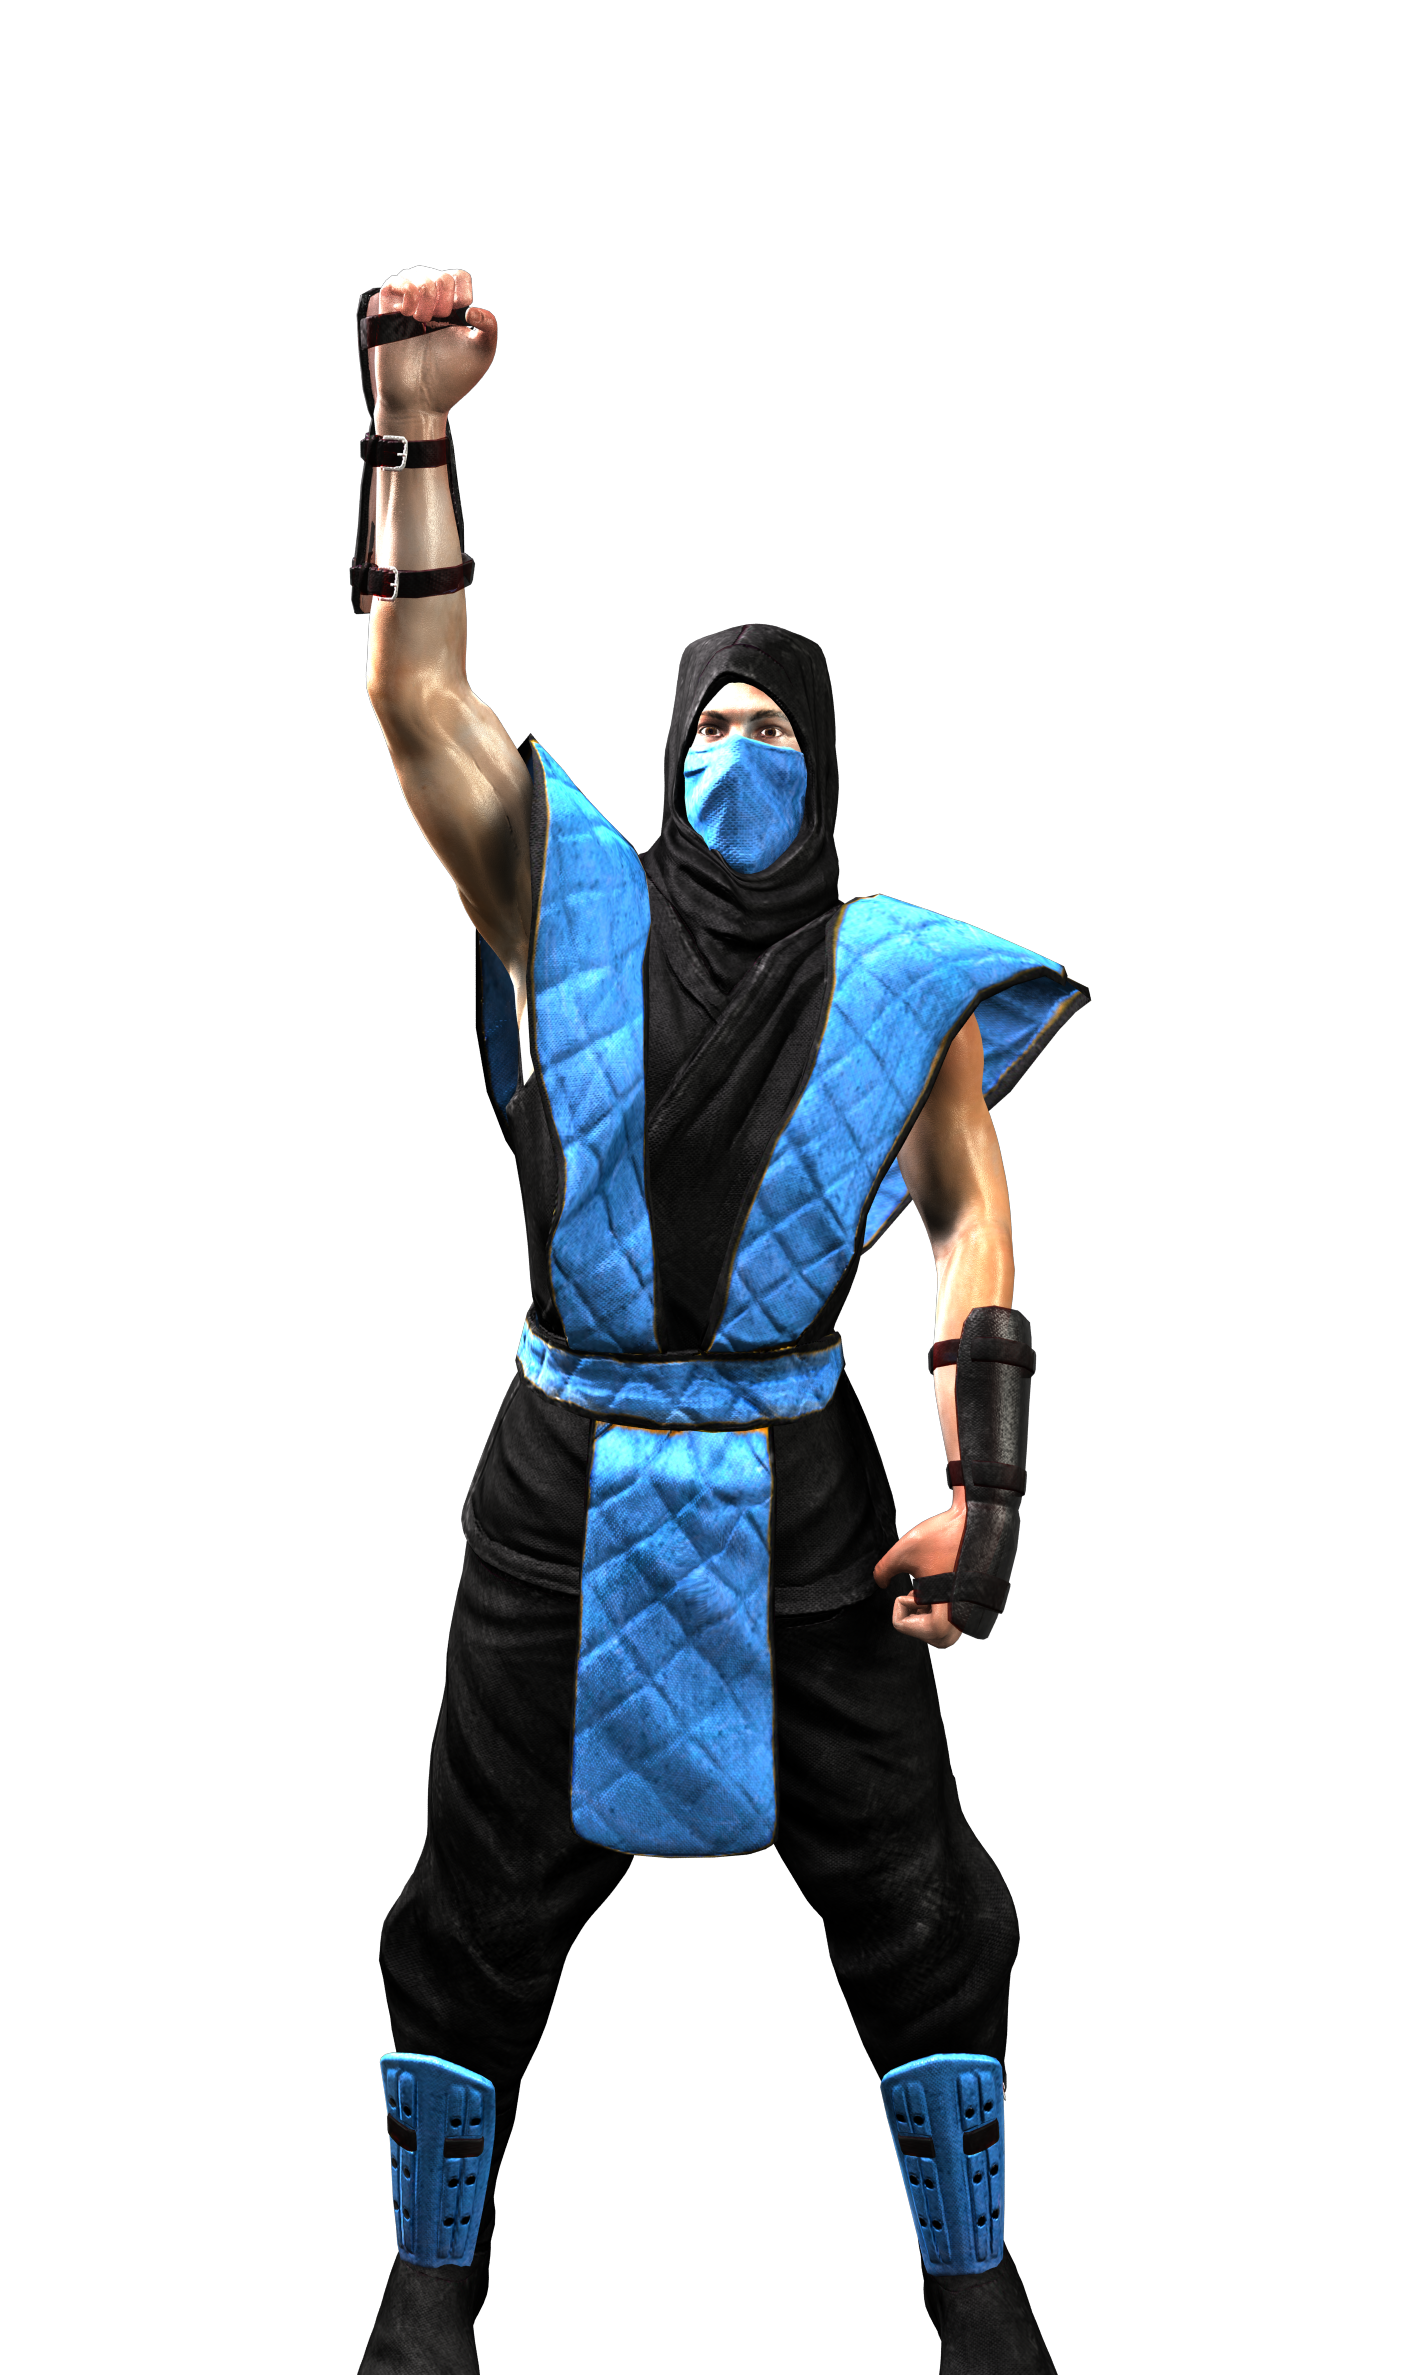 Subzero Profession Ii Mythologies Costume Mortal Kombat PNG Image. 